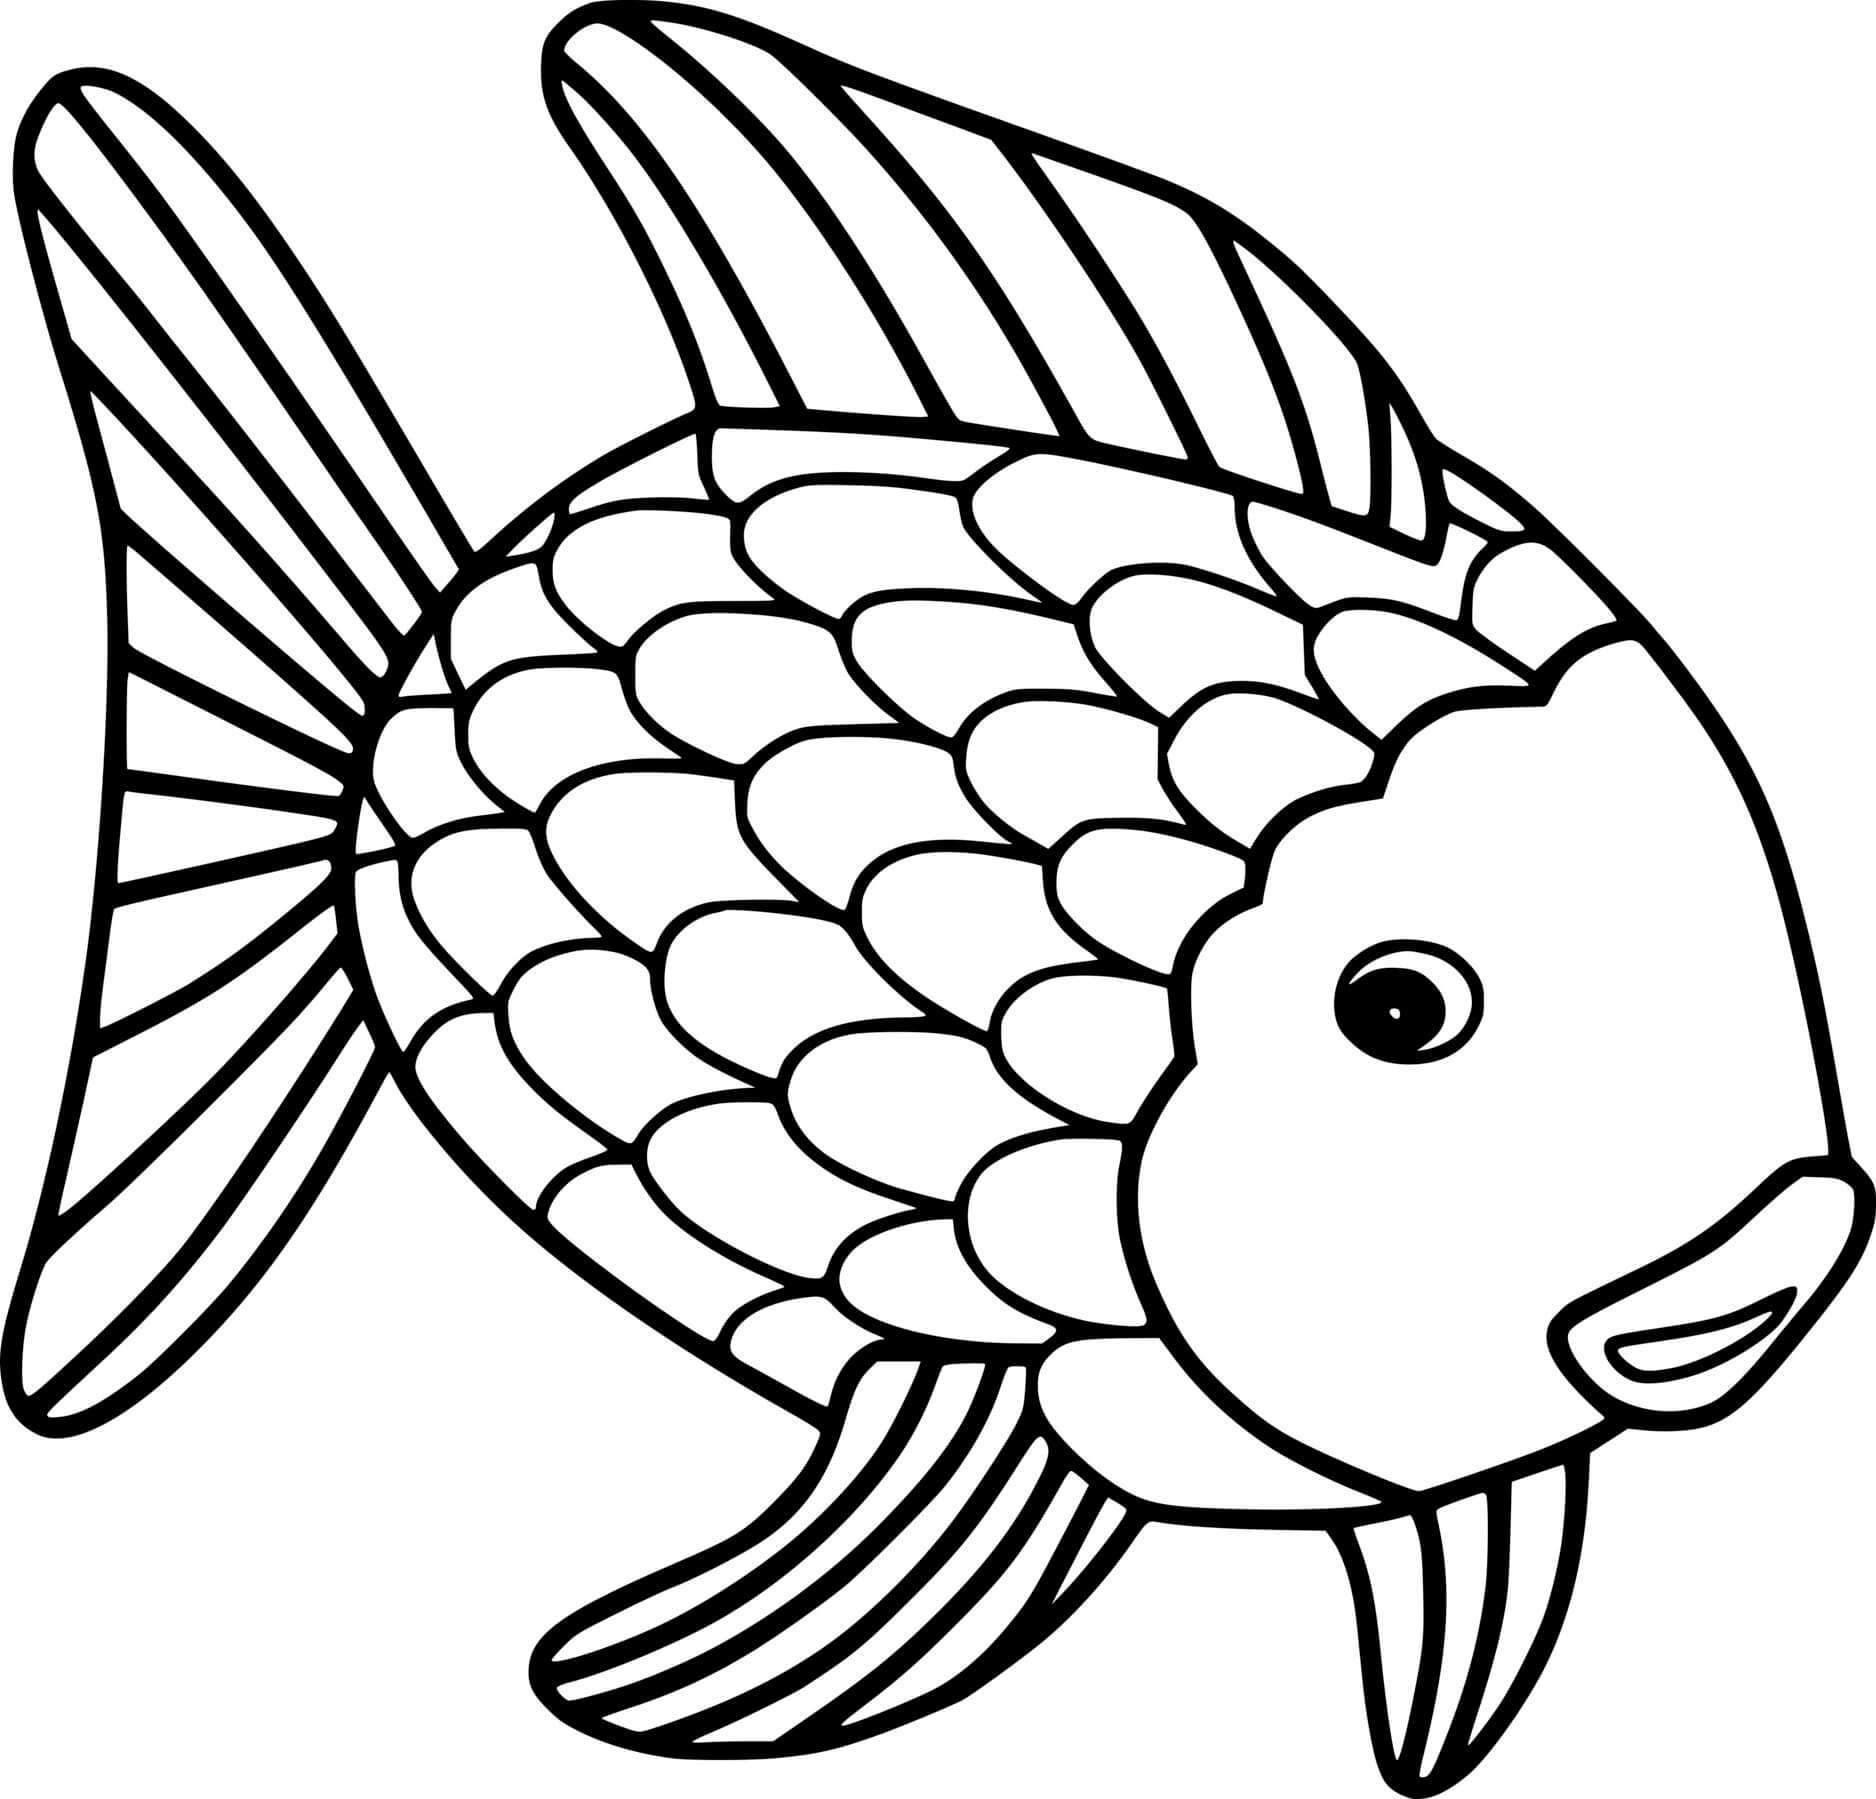 Раскраска рыбки для детей 5 6 лет. Раскраска рыбка. Рыба раскраска для детей. Рыбка раскраска для детей. Золотая рыбка раскраска.